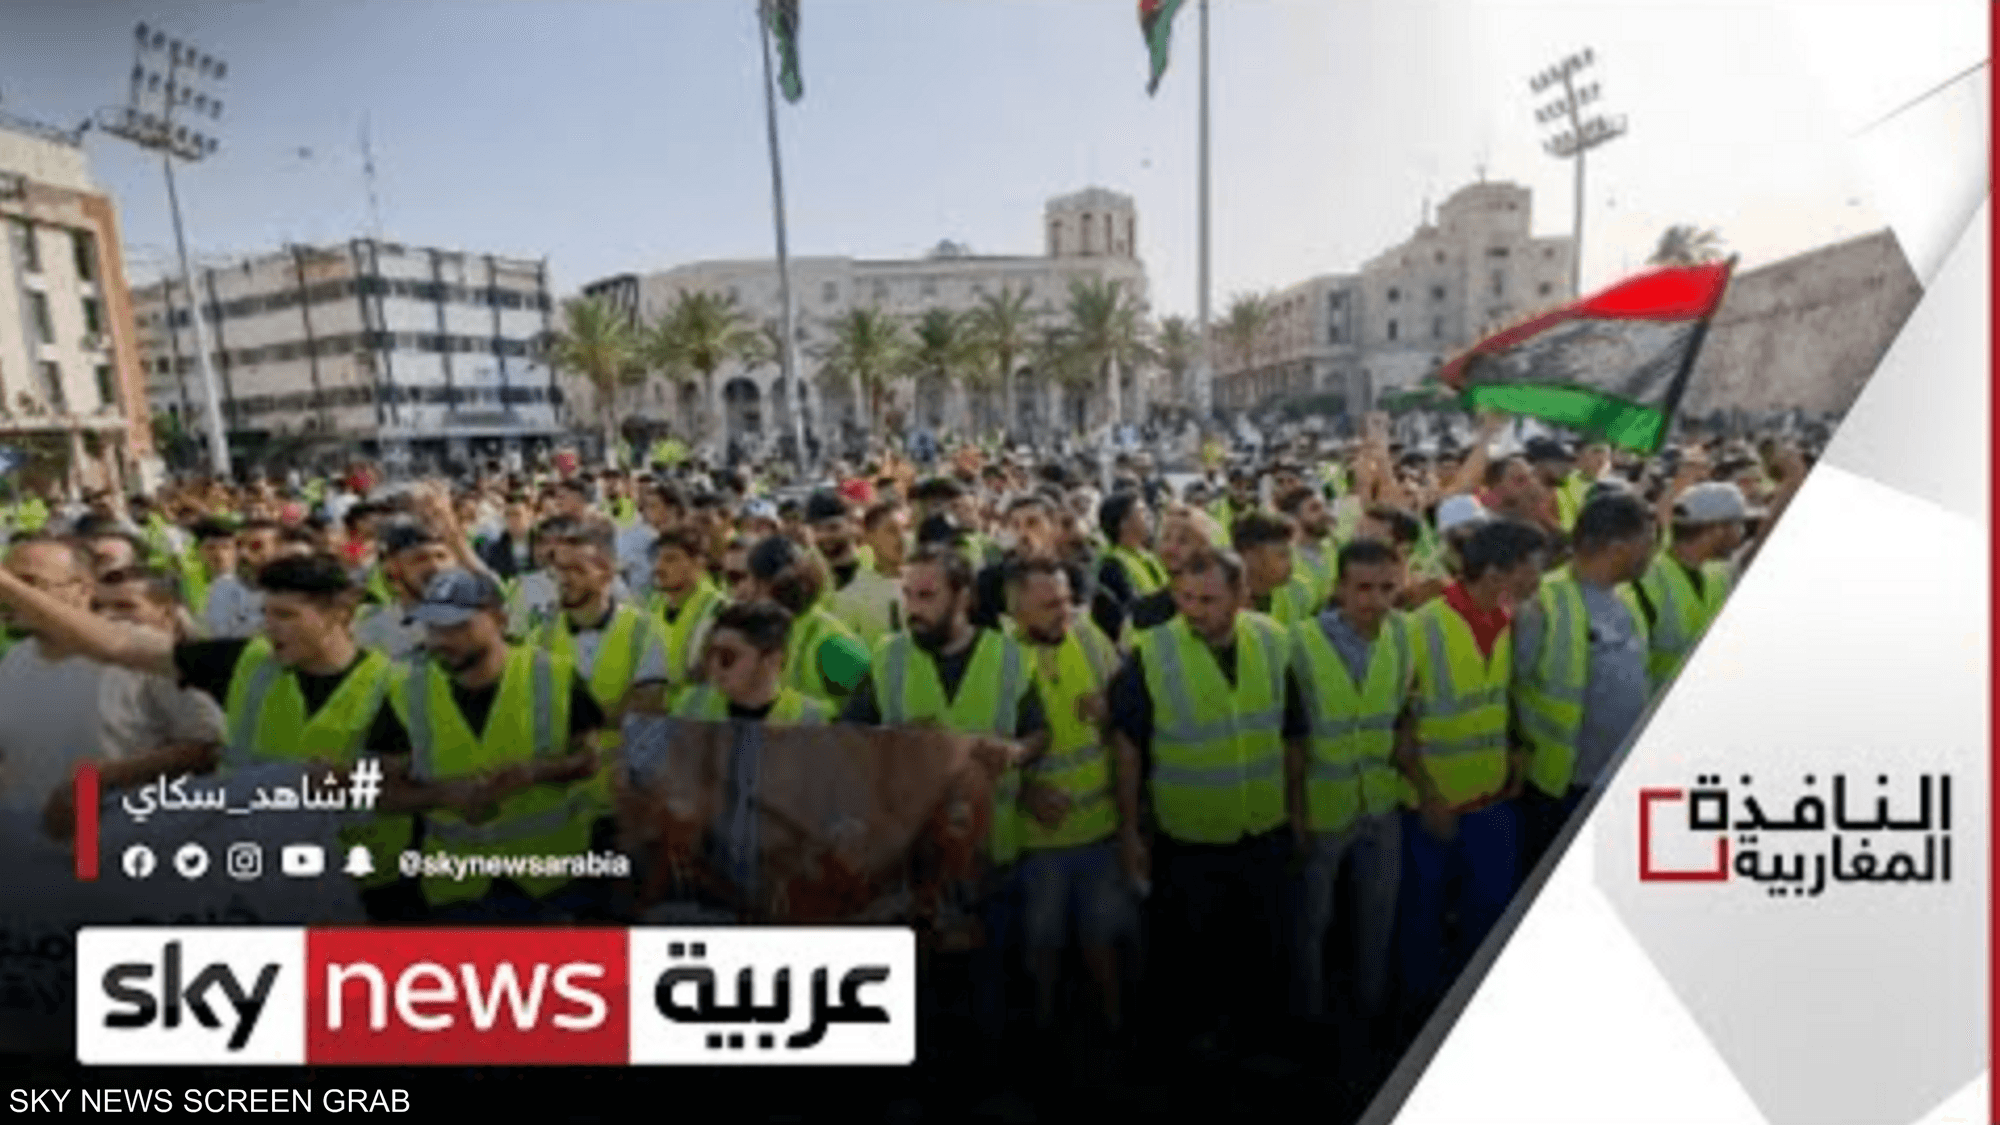 المتظاهرون يدعون للعصيان المدني في ليبيا